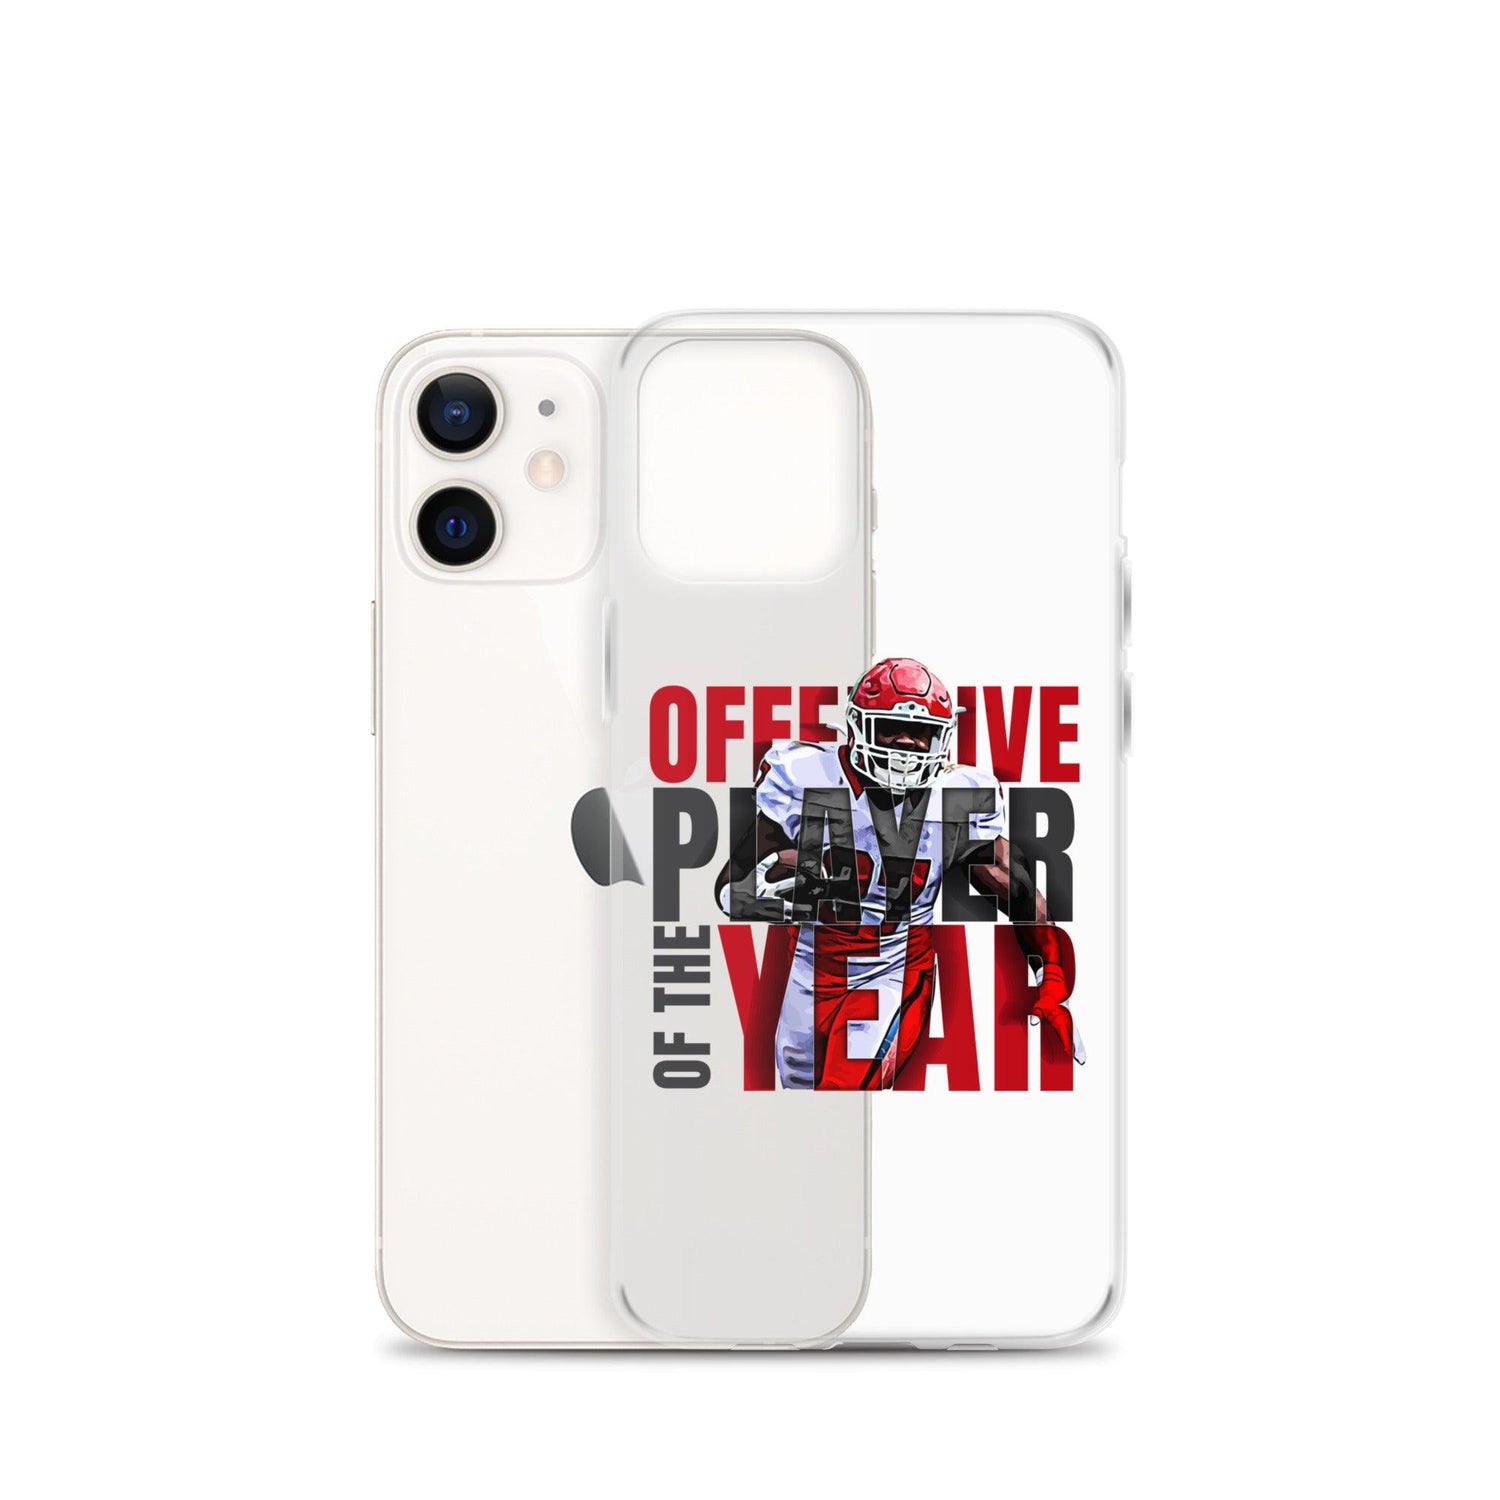 Darius Victor "OPOY" iPhone Case - Fan Arch